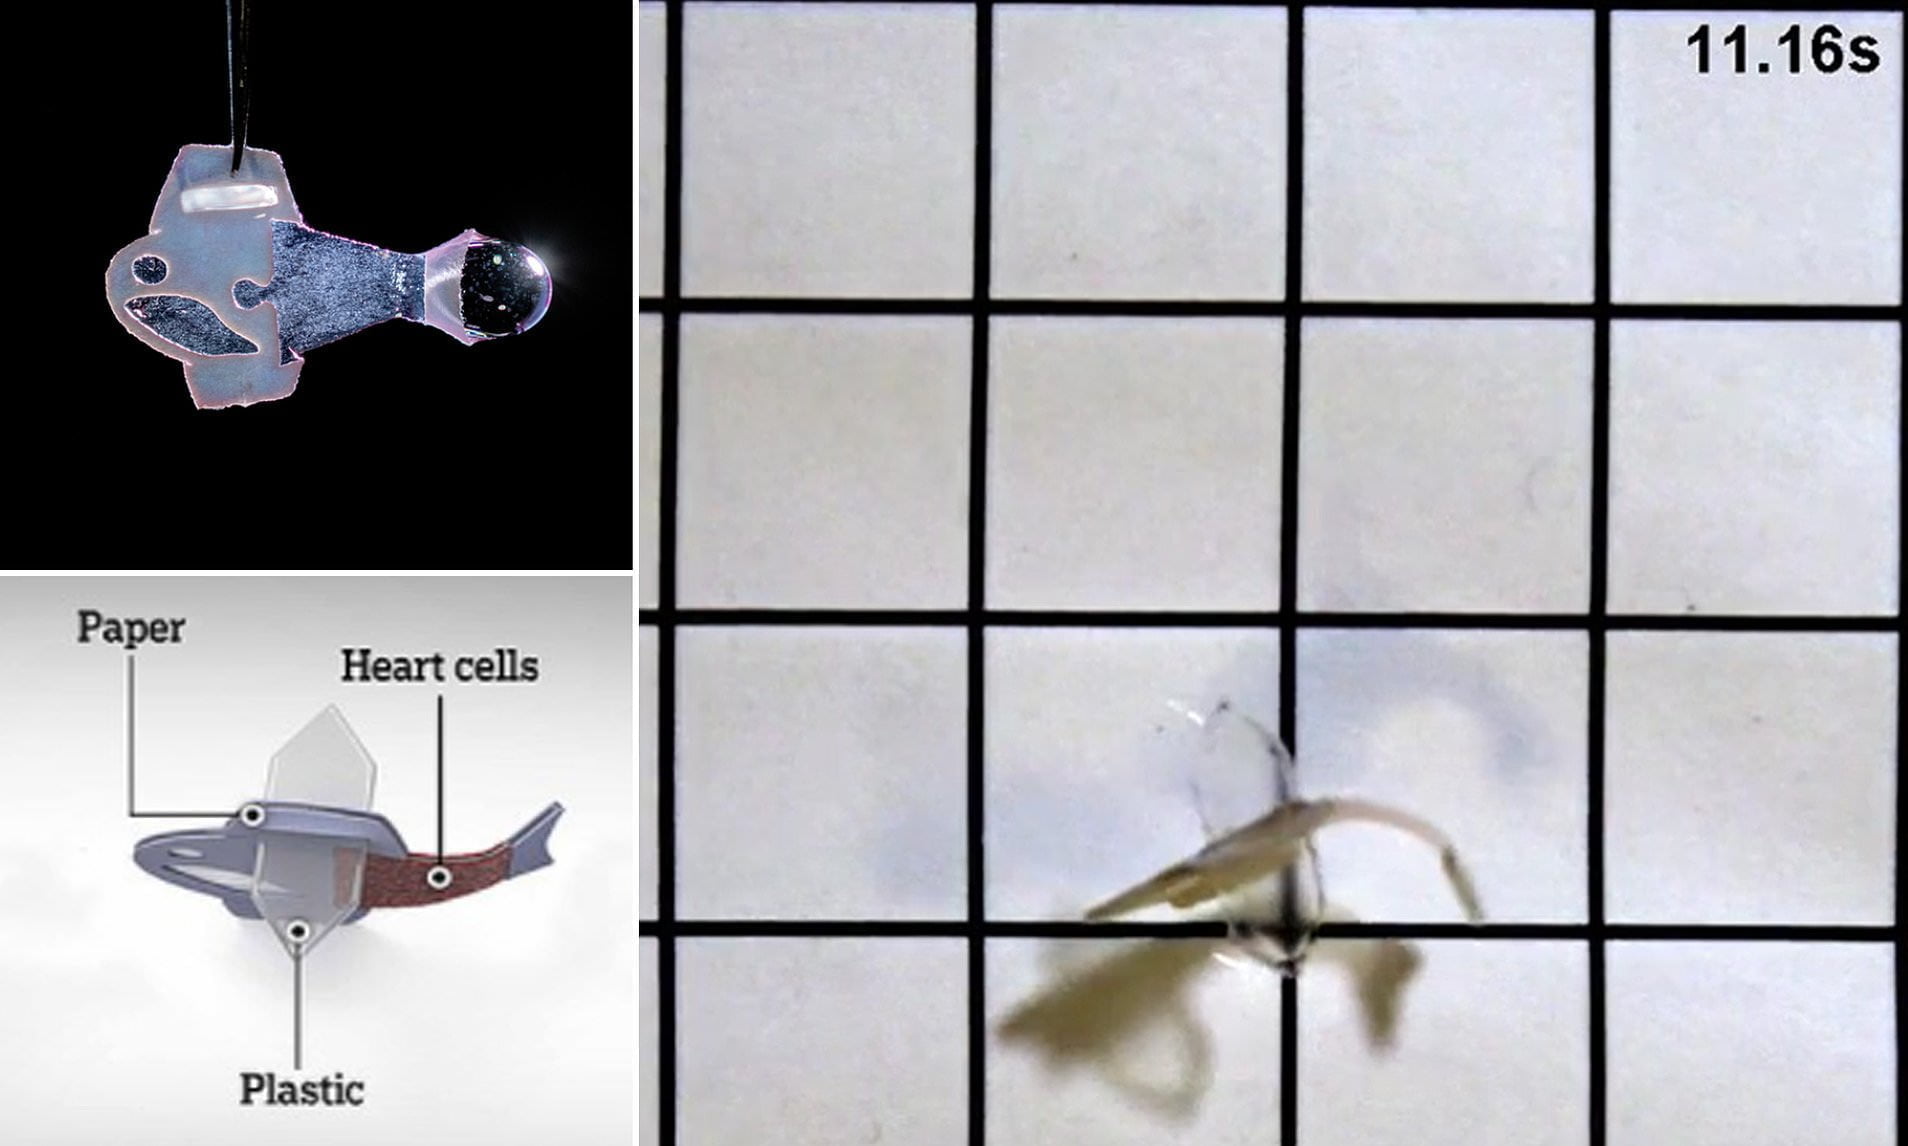 54069621 0 image a 5 1644591878824 علماء يبتكرون سمكة اصطناعية مصنوعة من خلايا قلب الإنسان مجلة نقطة العلمية